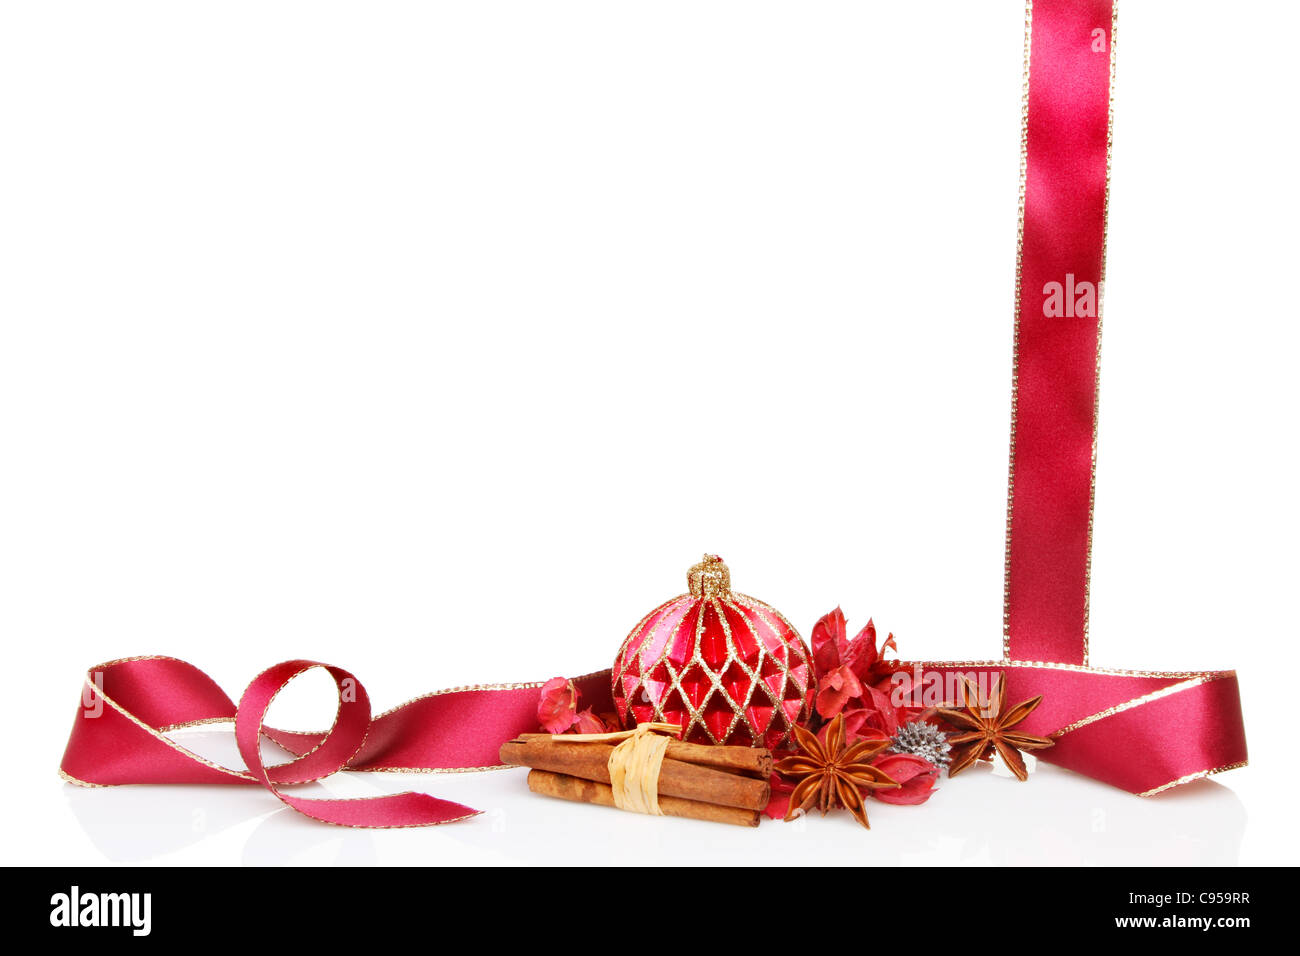 Sur le thème de Noël avec un cadre ou une bordure décoration babiole, pot-pourri, la cannelle, l'anis étoilé épices et un ruban rouge bordé d'or Banque D'Images